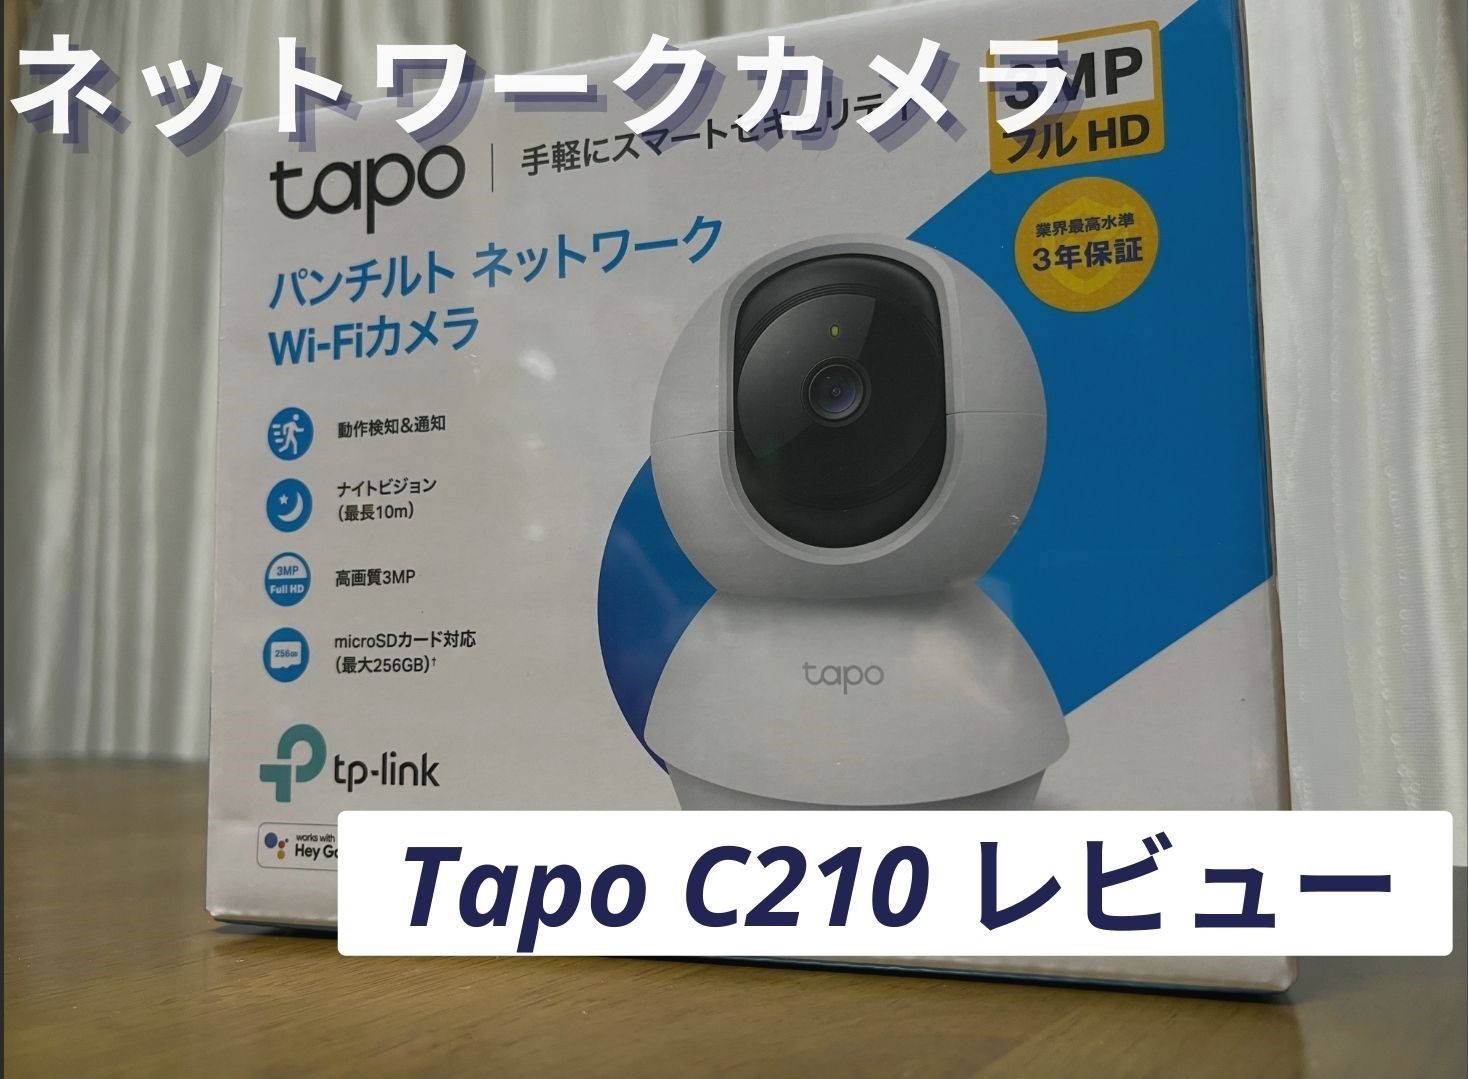 録画もOK 見守りネットワークカメラ Tapo C210 レビュー - まるふぉい 